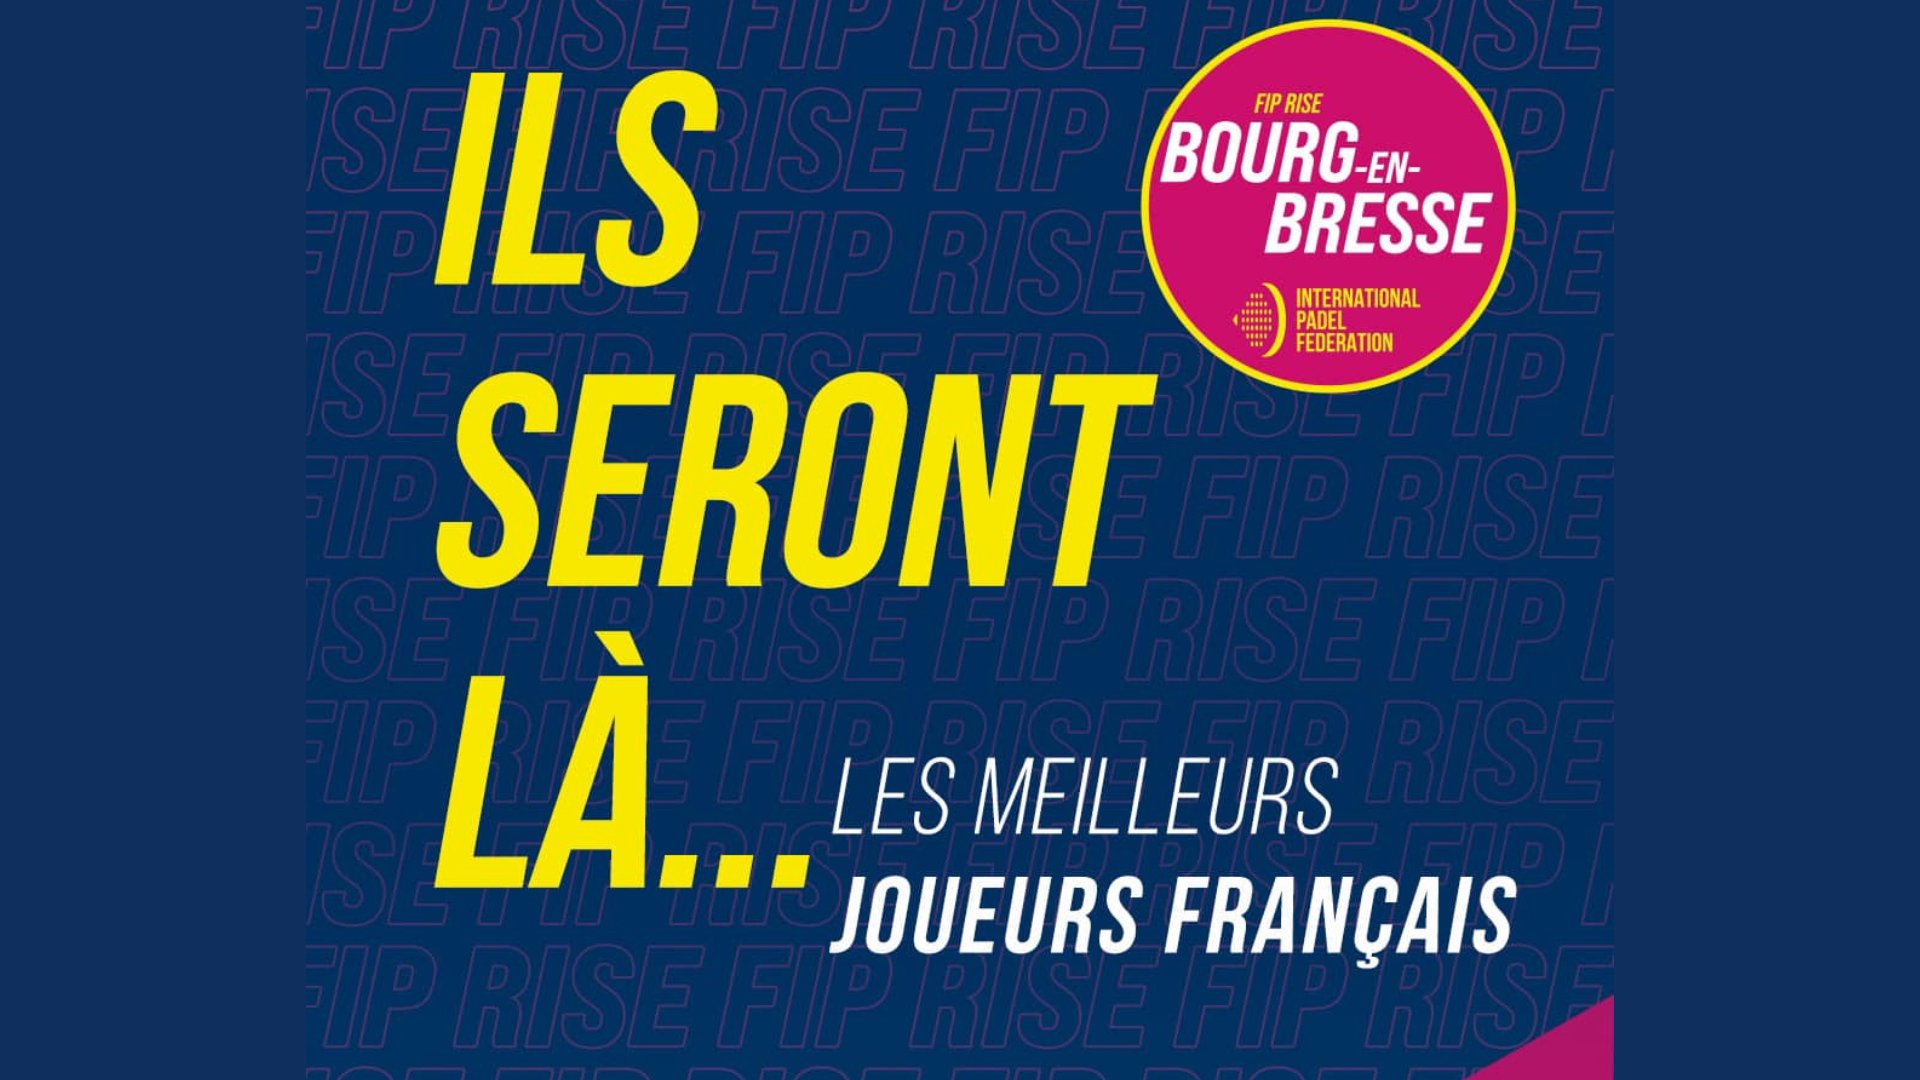 Beste Franse spelers FIP Rise Bourge en Bresse